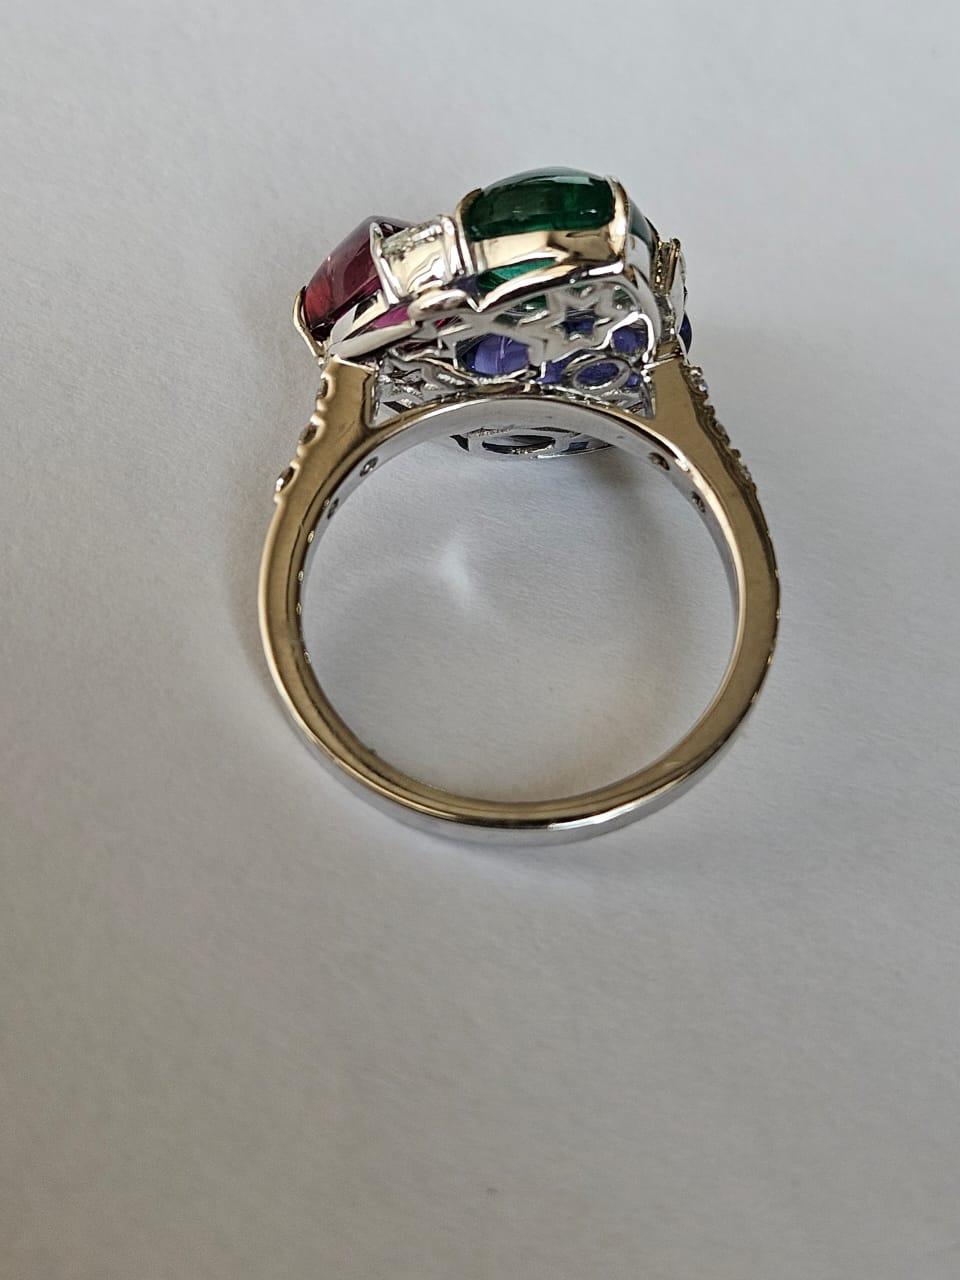 Modern Set in 18K Gold, Emerald, Rubellite, Tanzanite sugarloaf & Diamond Cocktail Ring